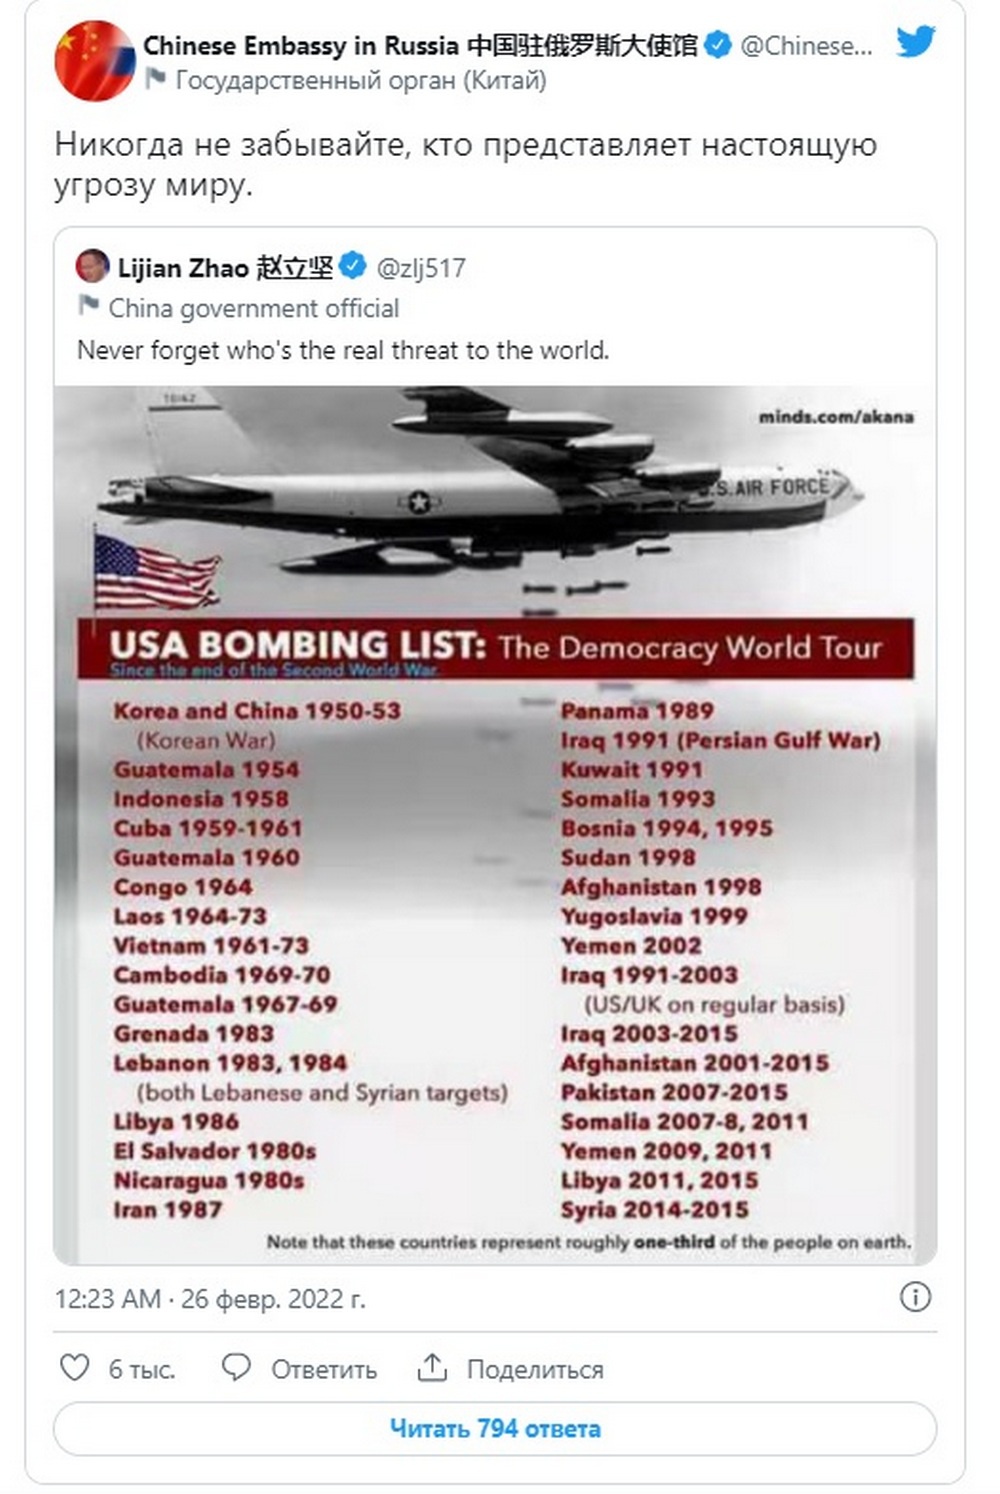 Московская дипмиссия КНР пояснила твит представителя информационного департамента МИД Китая Чжао Лицзяня, который опубликовал картинку с подписью «Список бомбардировок США: мировой тур демократии».